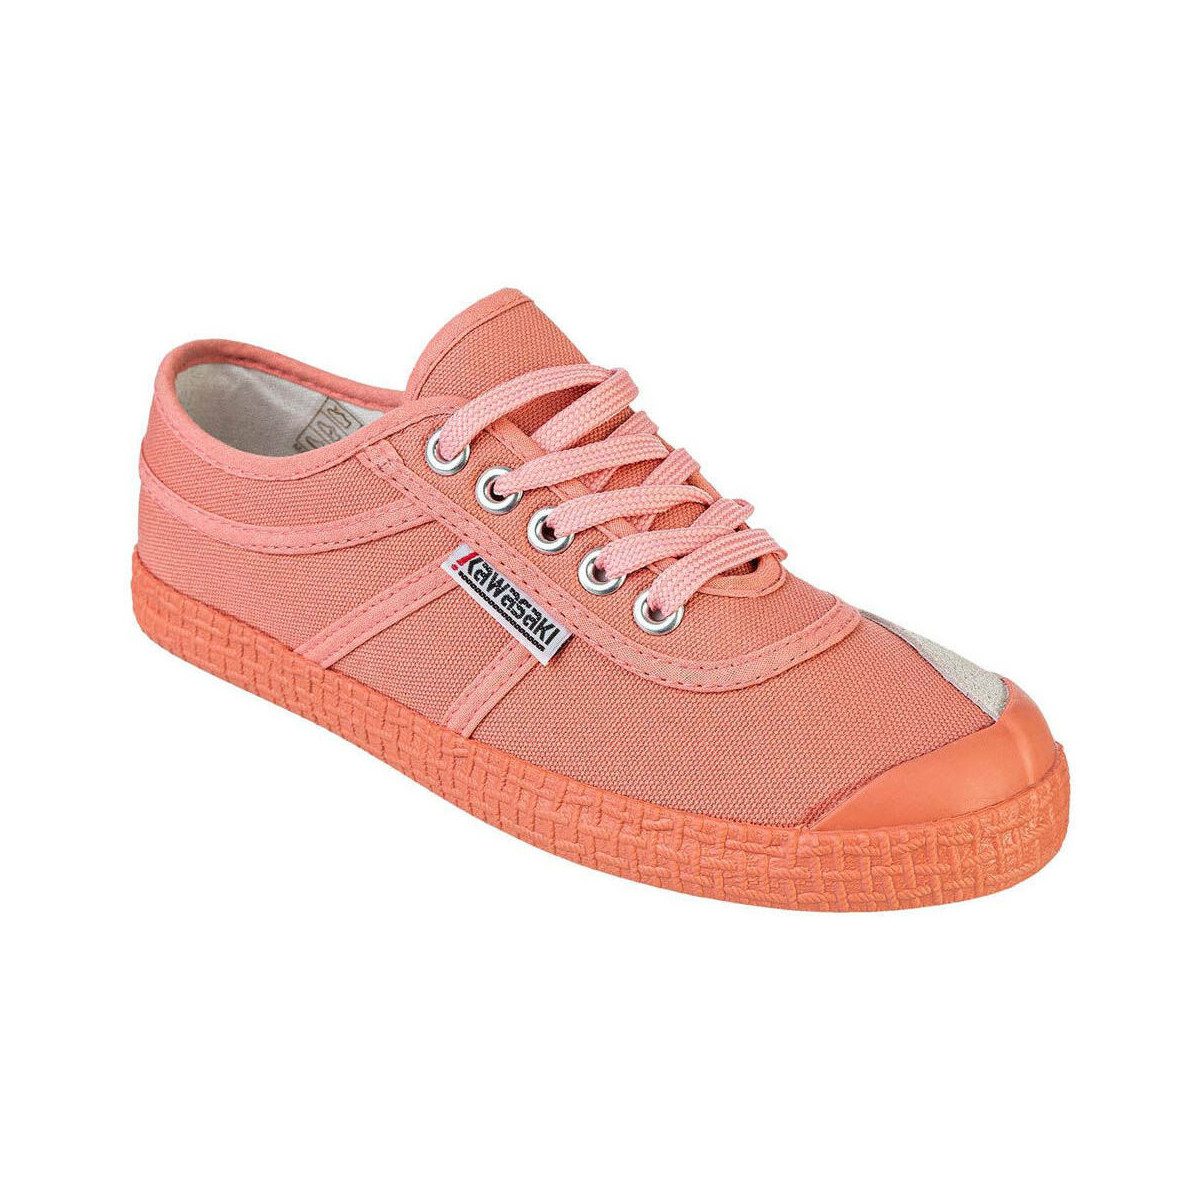 Παπούτσια Γυναίκα Sneakers Kawasaki Color Block Shoe K202430 4144 Shell Pink Ροζ